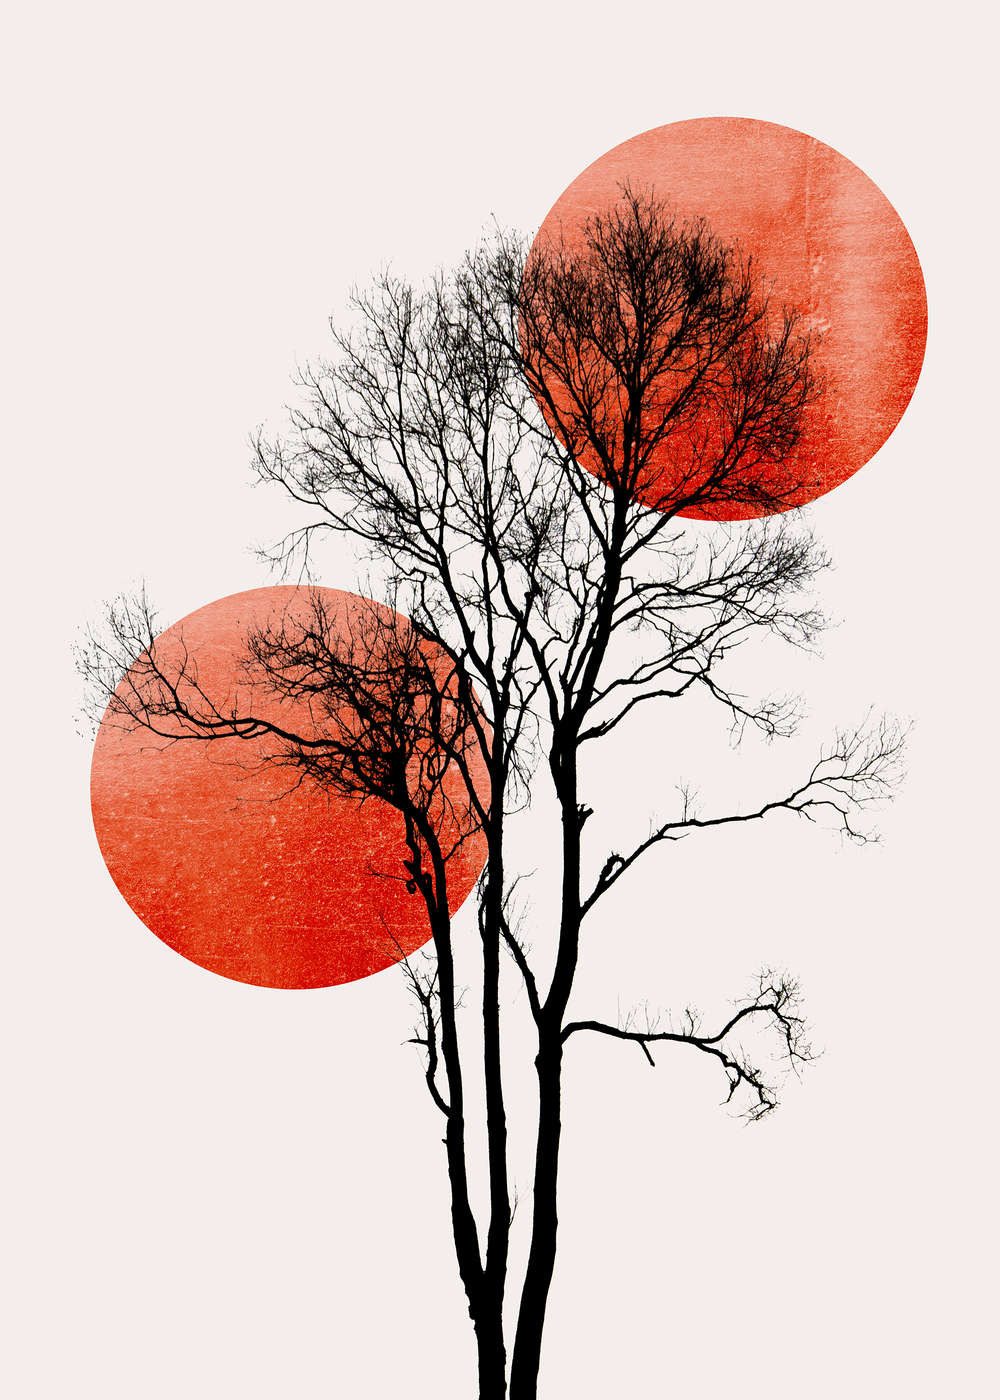             Fototapete Baum mit Farbakzent im minimalistischen Stil
        